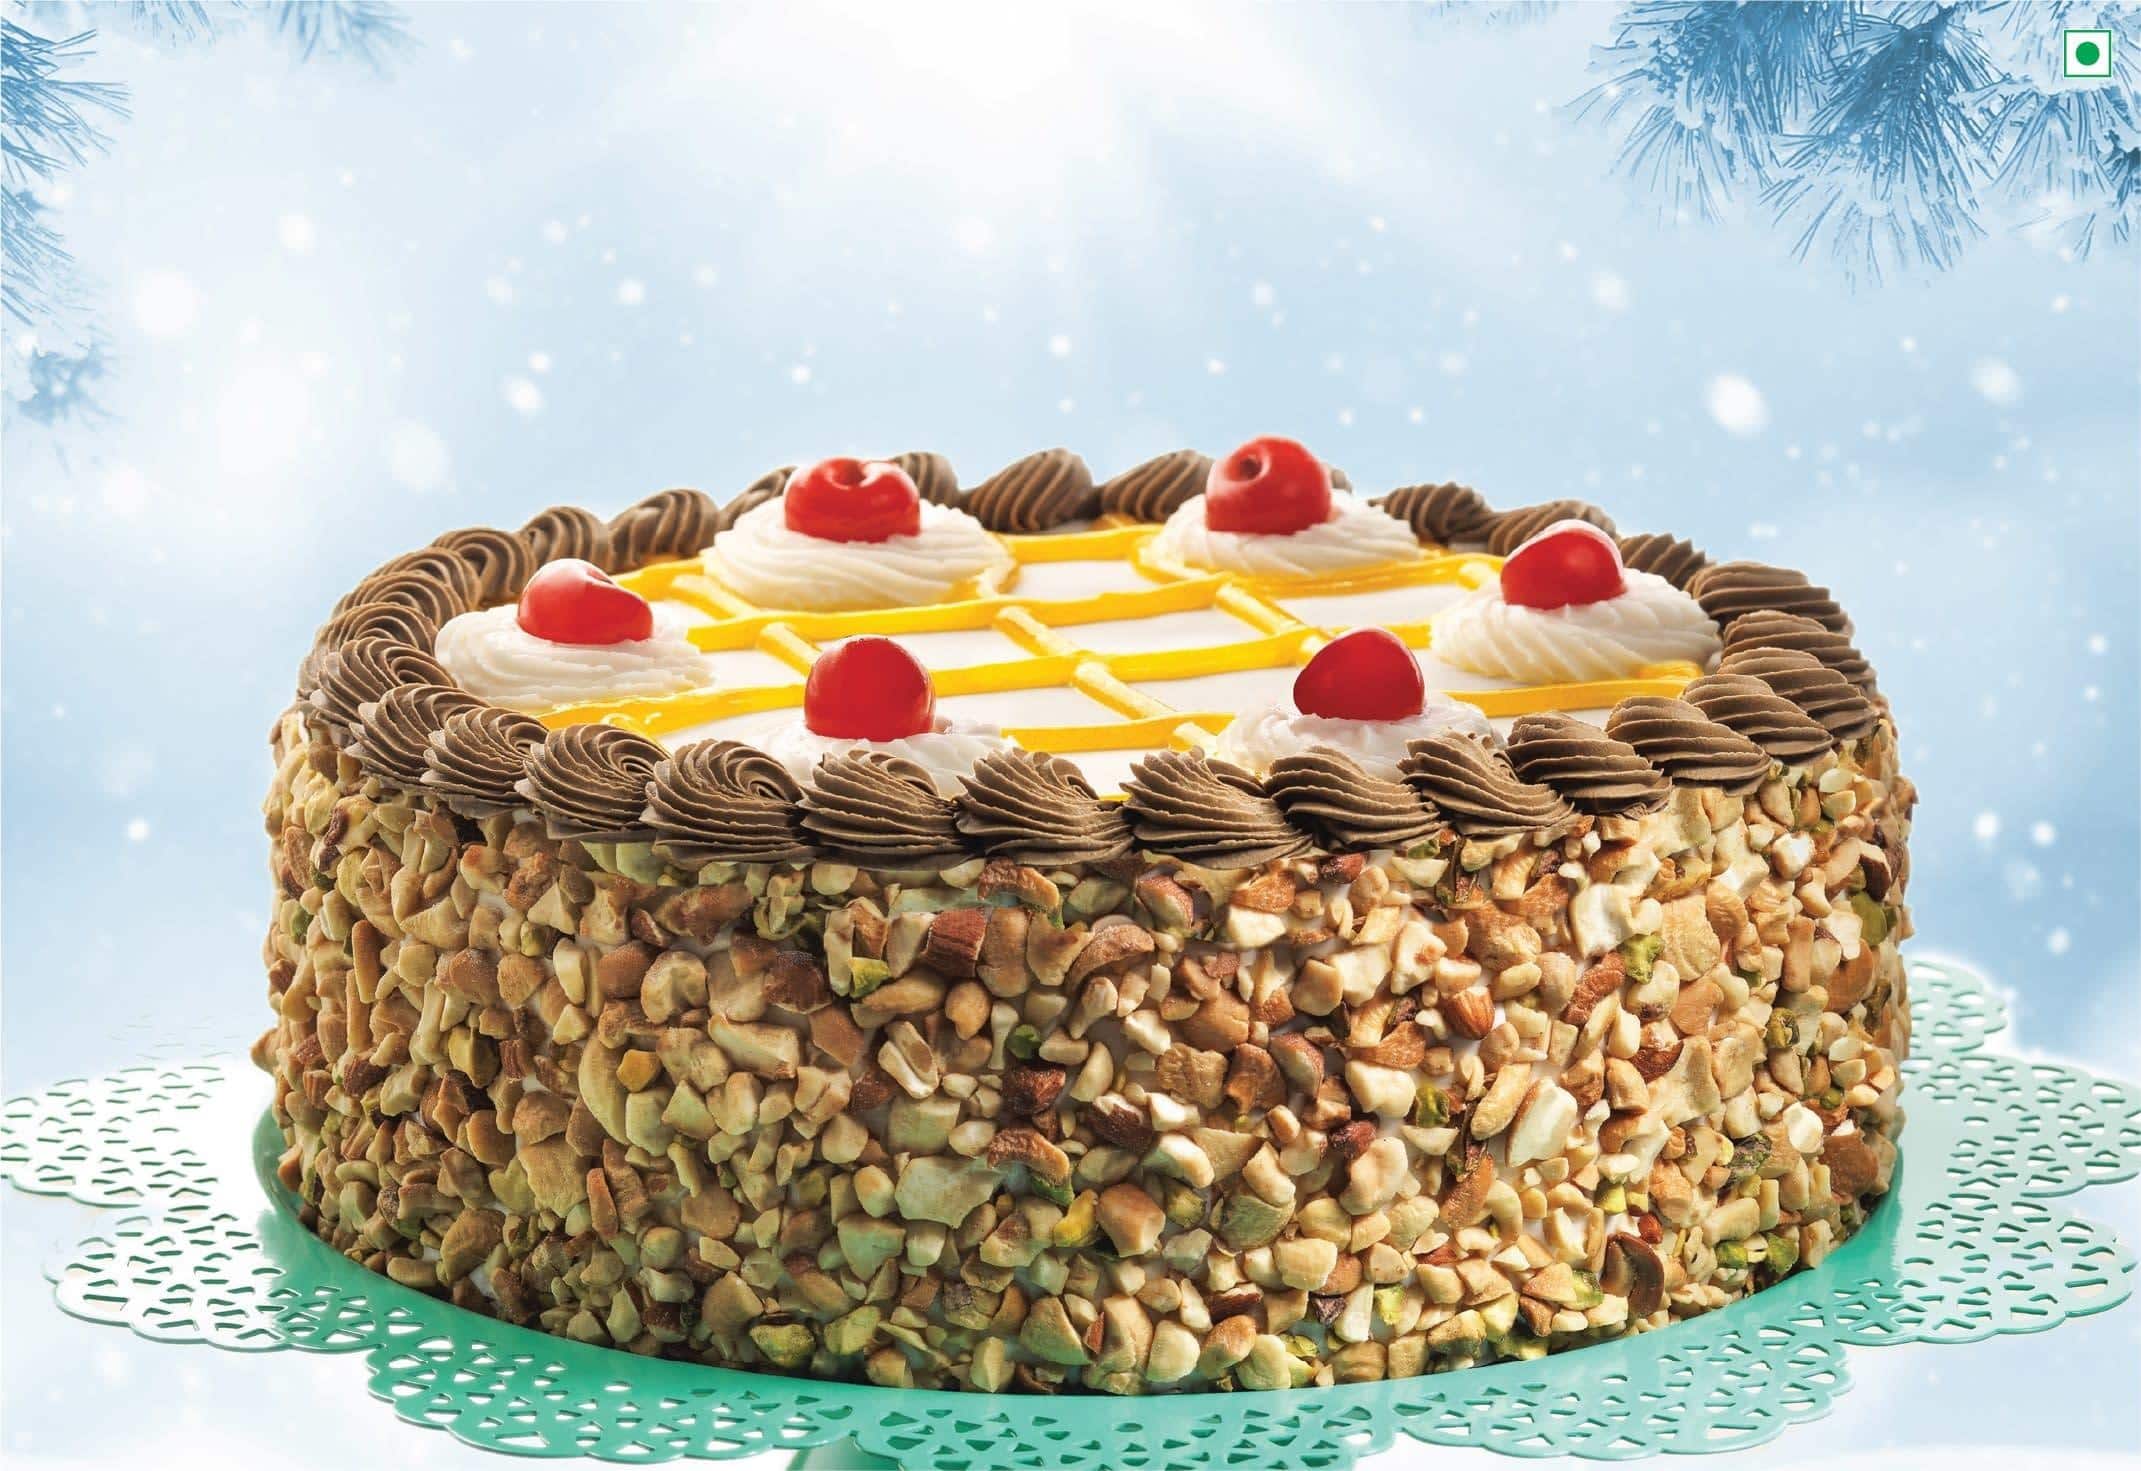 Cake N Bake in Moti Nagar,Ludhiana - Order Food Online - Best Birthday Cake  Retailers in Ludhiana - Justdial